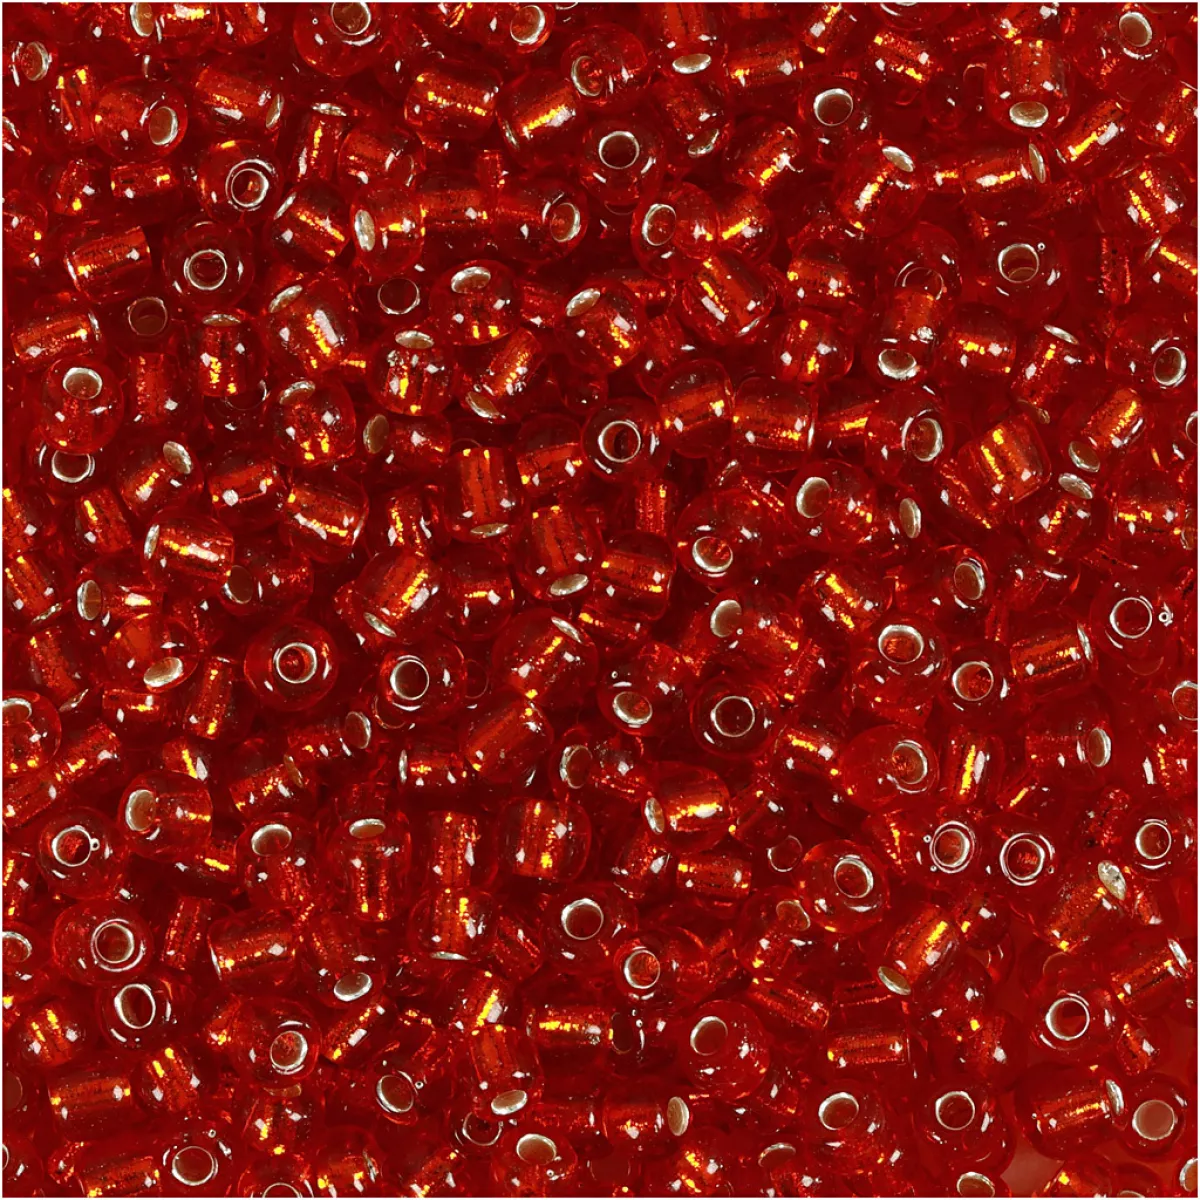 #2 - Rocaiperler, diam. 3 mm, str. 8/0 , hulstr. 0,6-1,0 mm, metal rød, 25 g/ 1 pk.